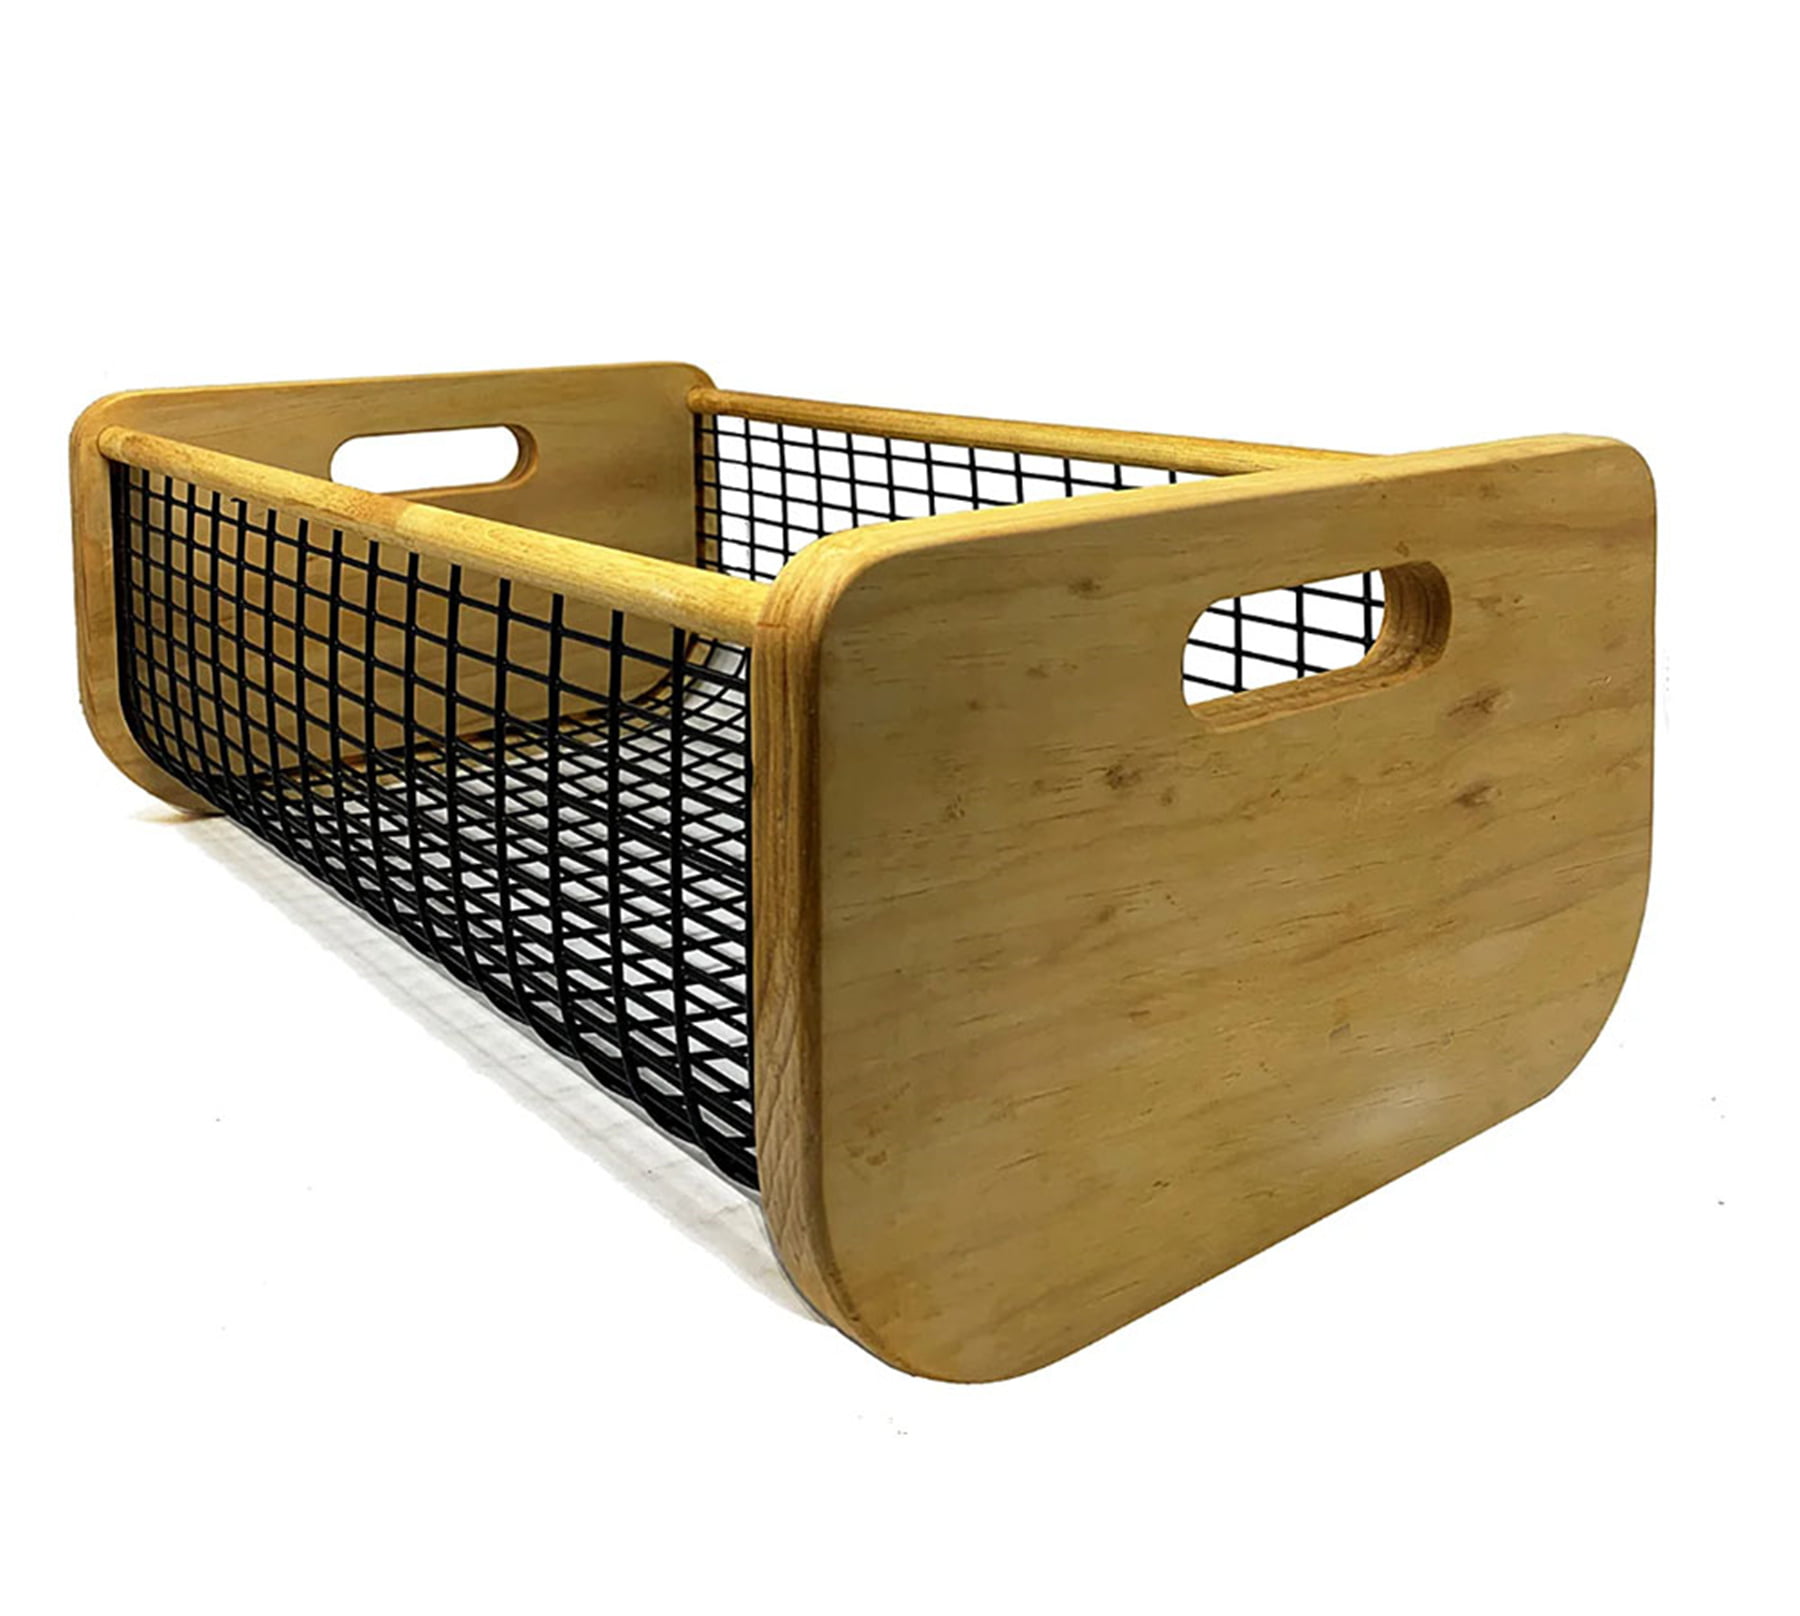  Garden Hod Basket Harvest Basket Vegetable Kitchen Storage Wood  Basket Fruit Basket Medium : Handmade Products